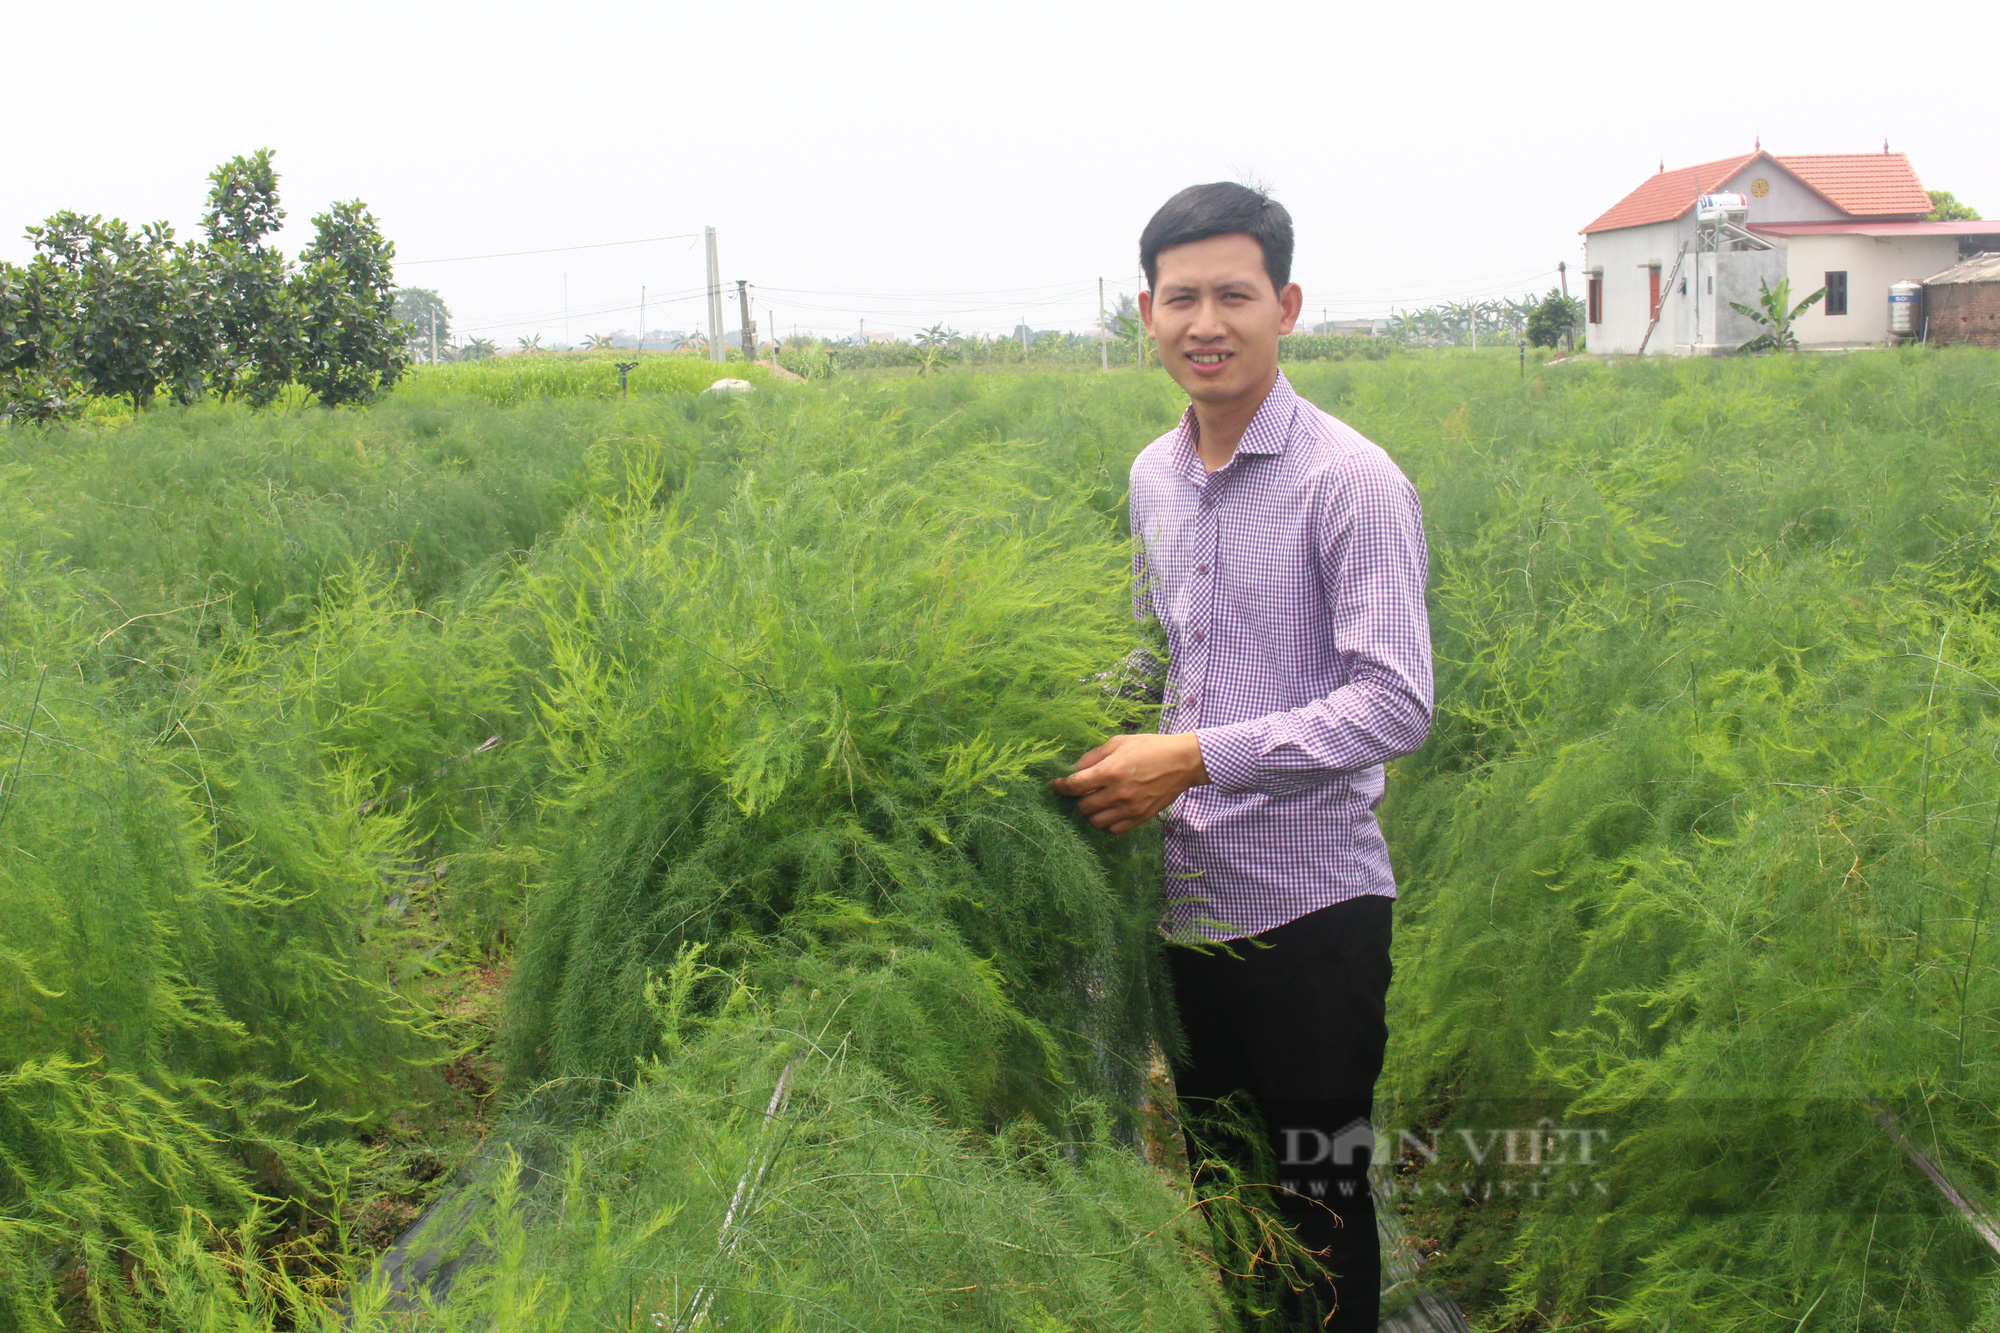 Bắc Ninh: Măng tây xanh có thương hiệu, cứ 1 mẫu người trồng thu hơn 400 triệu đồng/năm - Ảnh 1.